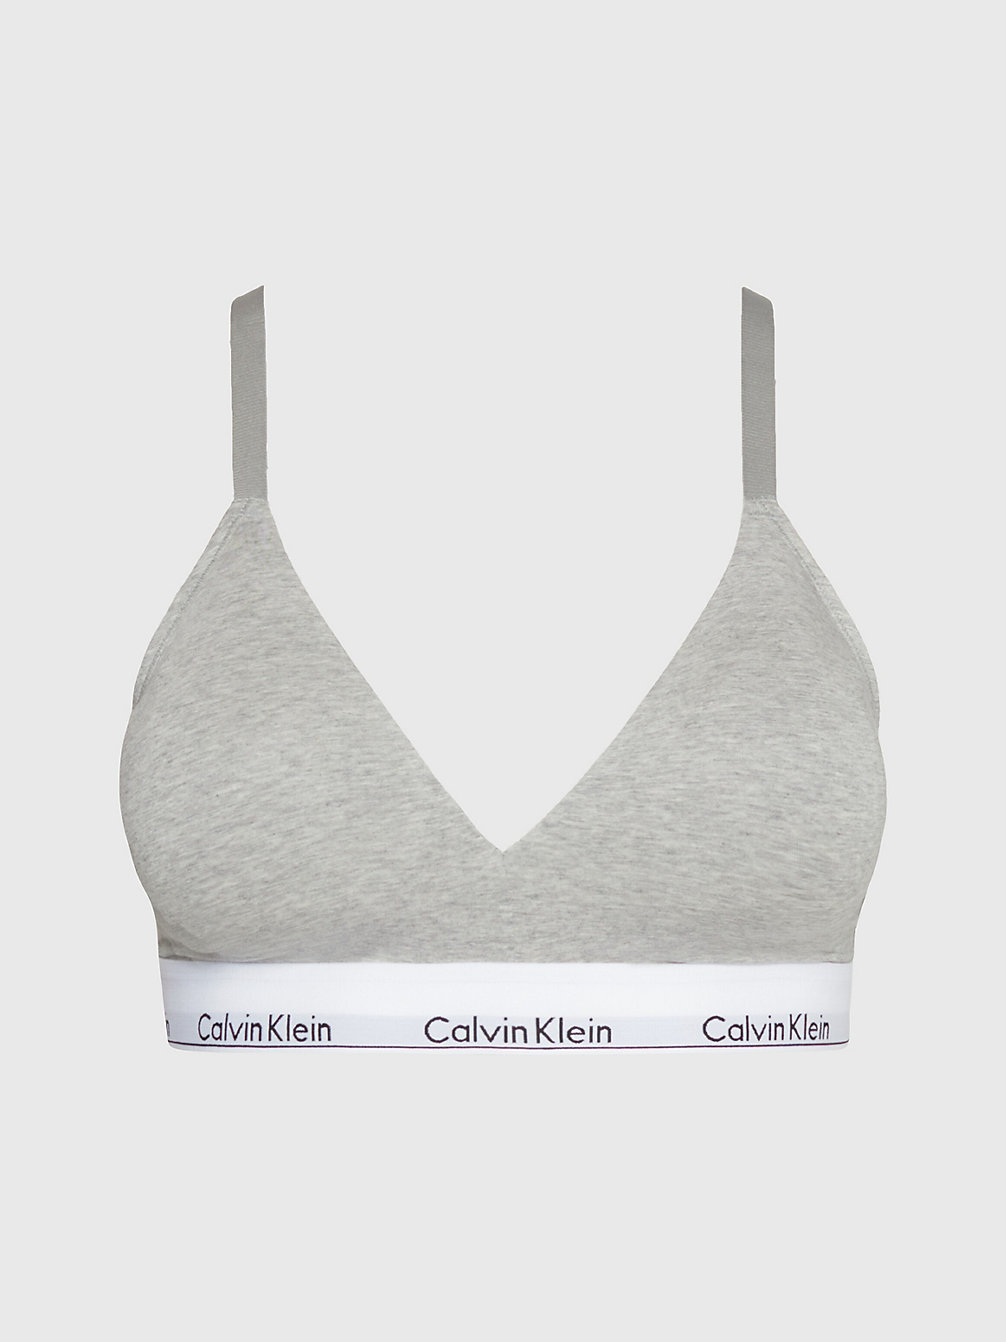 GREY HEATHER Triangel-Bh In Großen Größen – Modern Cotton undefined Damen Calvin Klein